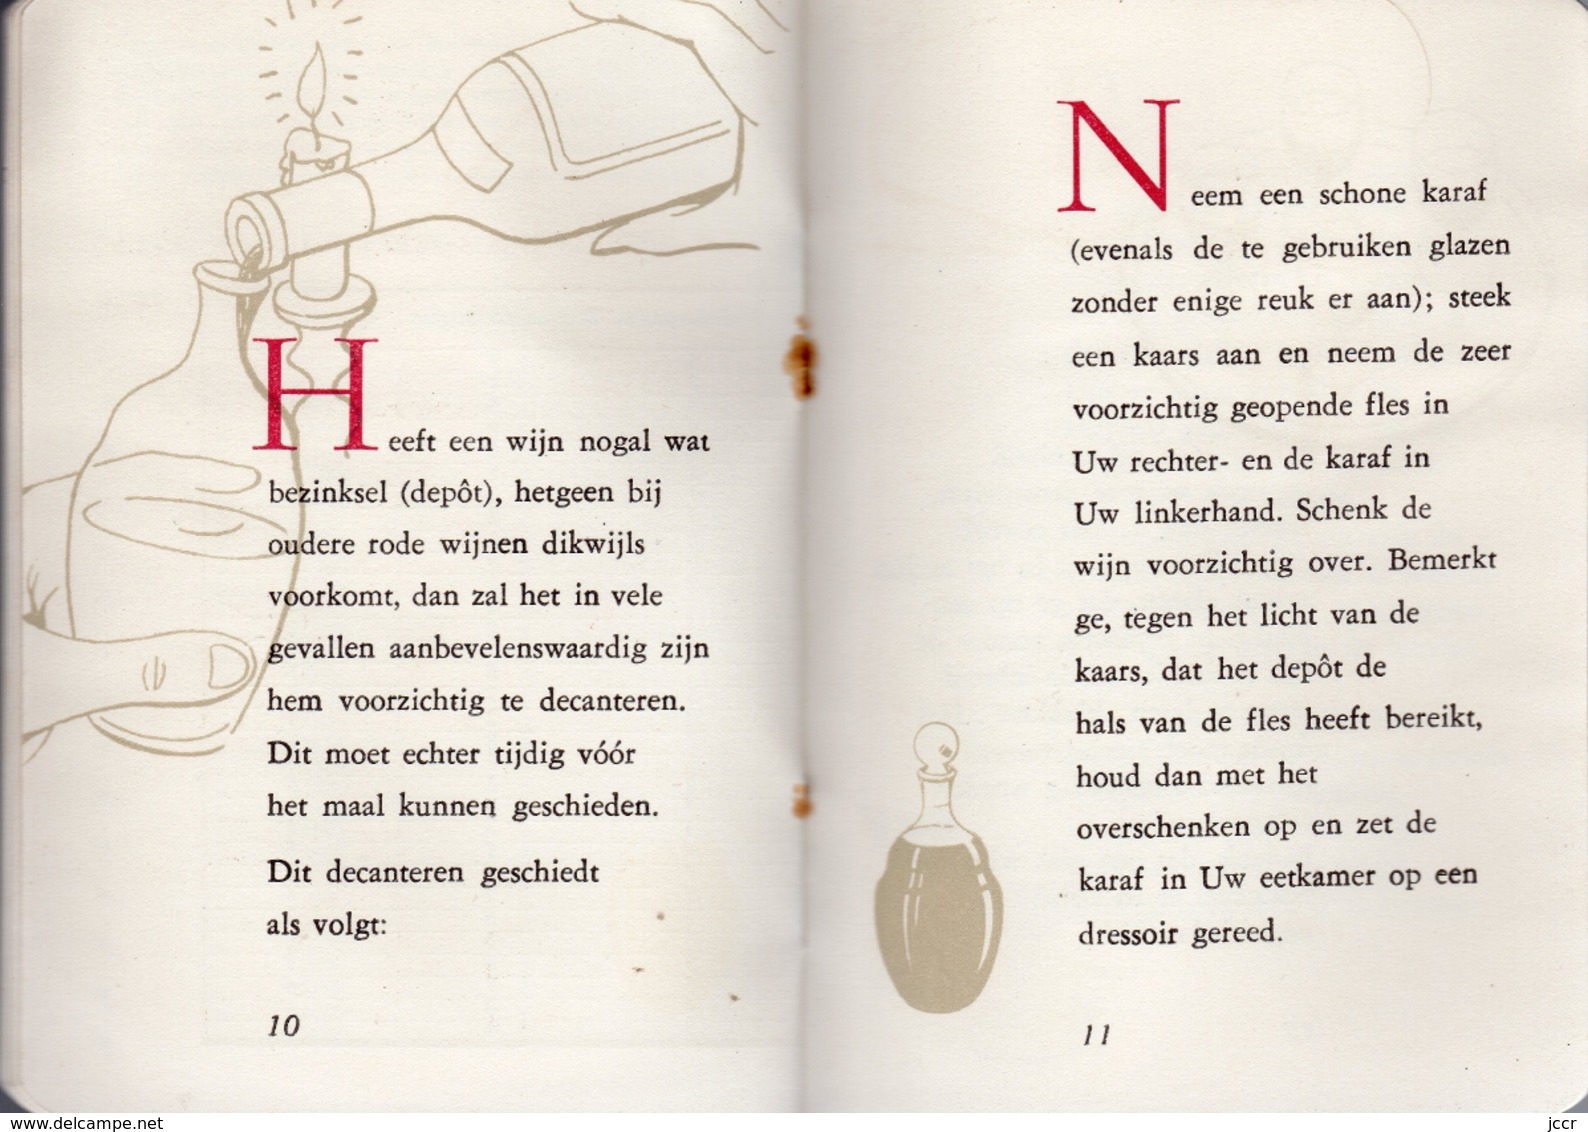 Wenken voor liefhebbers van de wijn (Astuces pour les amateurs de vin) - H. C. Wyers C.V. Dordrecht - vers 1955